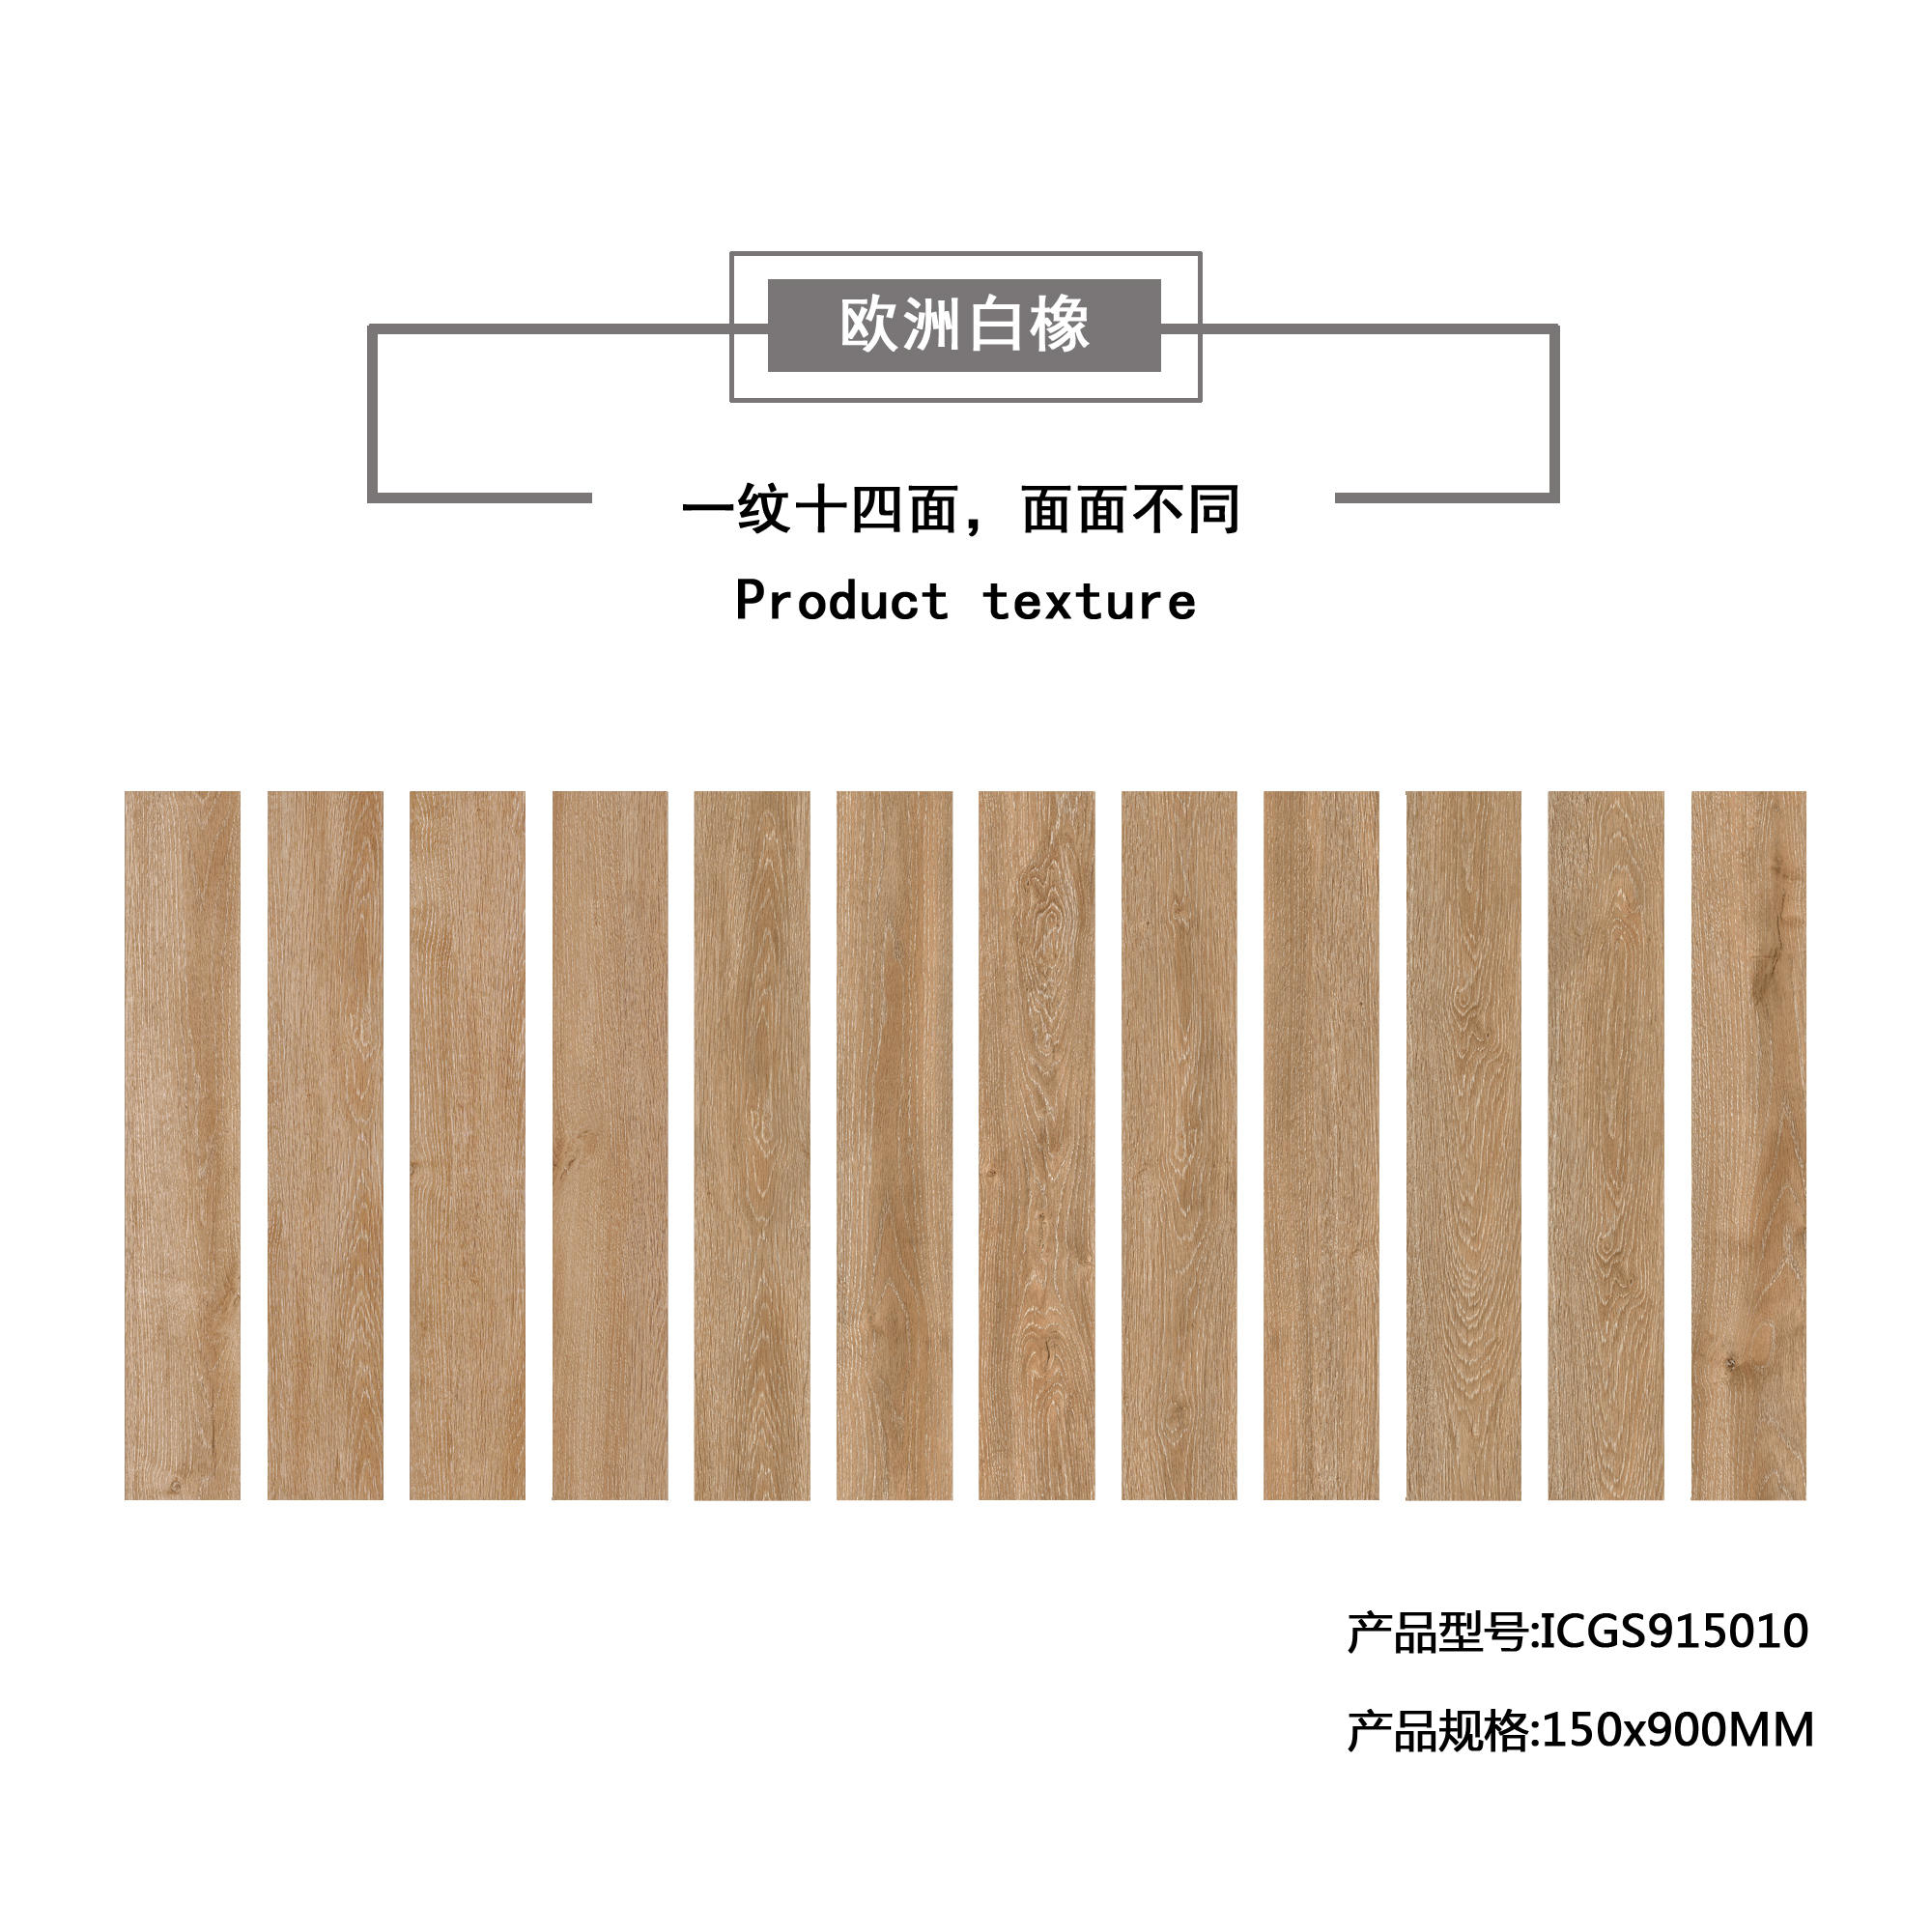 欧洲白橡（暗黄）木纹地板砖ICGS915010产品混铺图